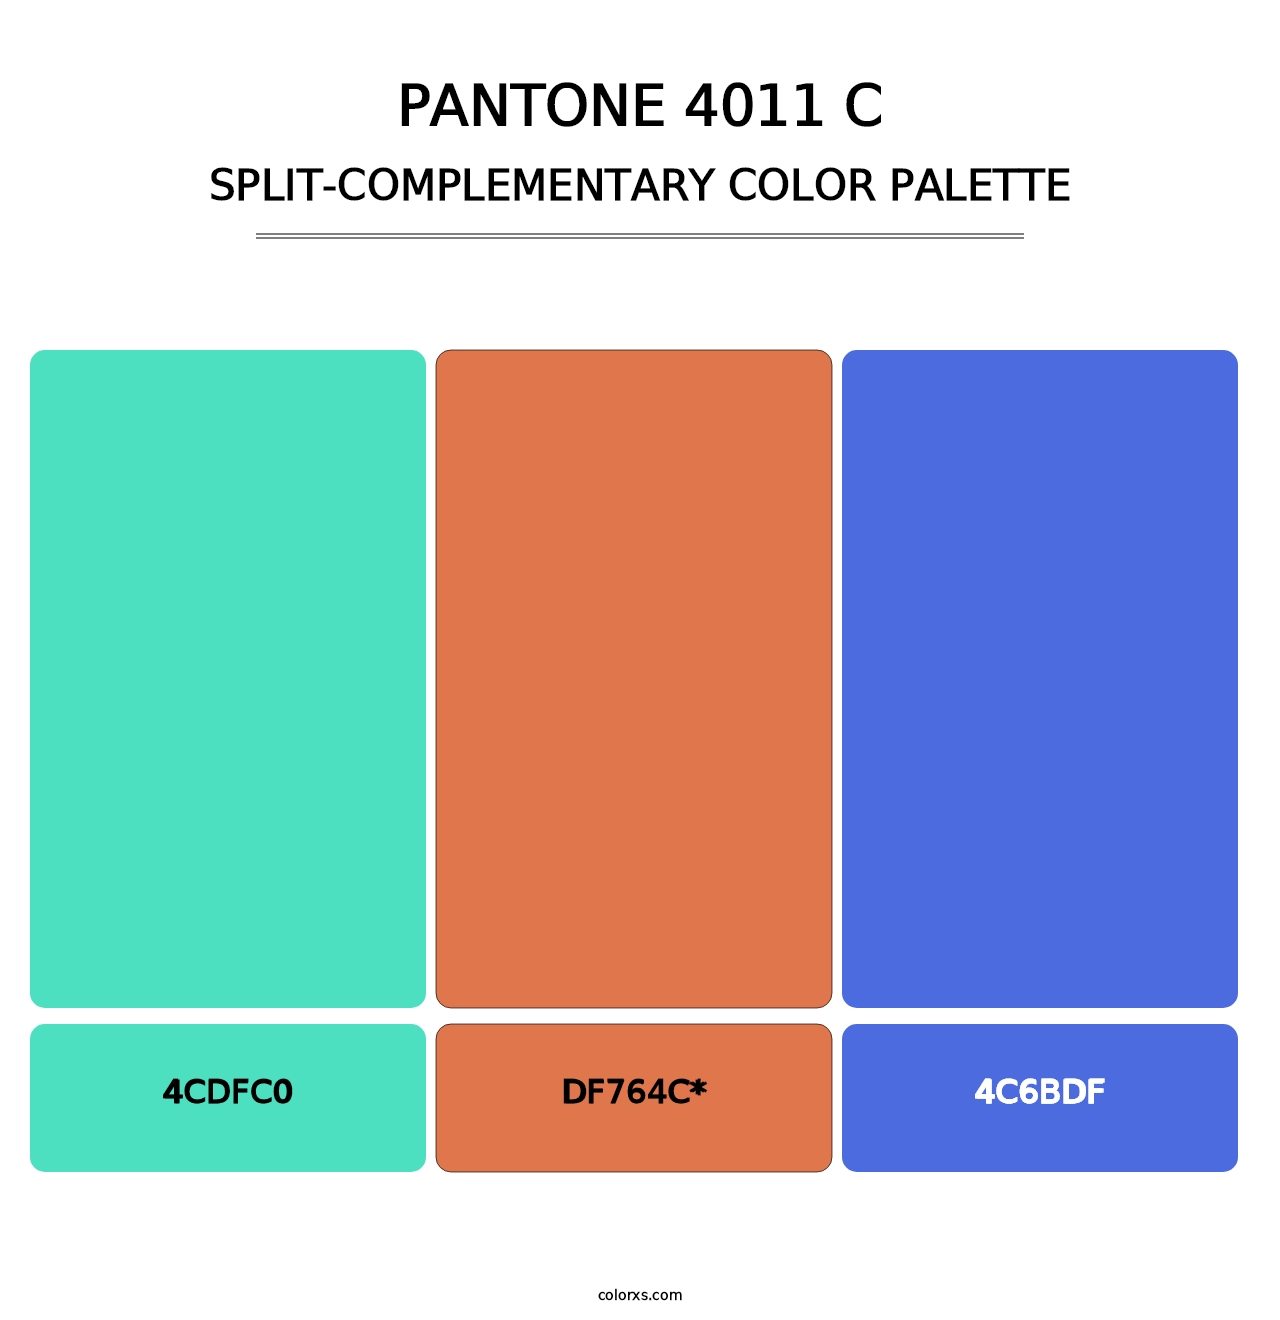 PANTONE 4011 C - Split-Complementary Color Palette